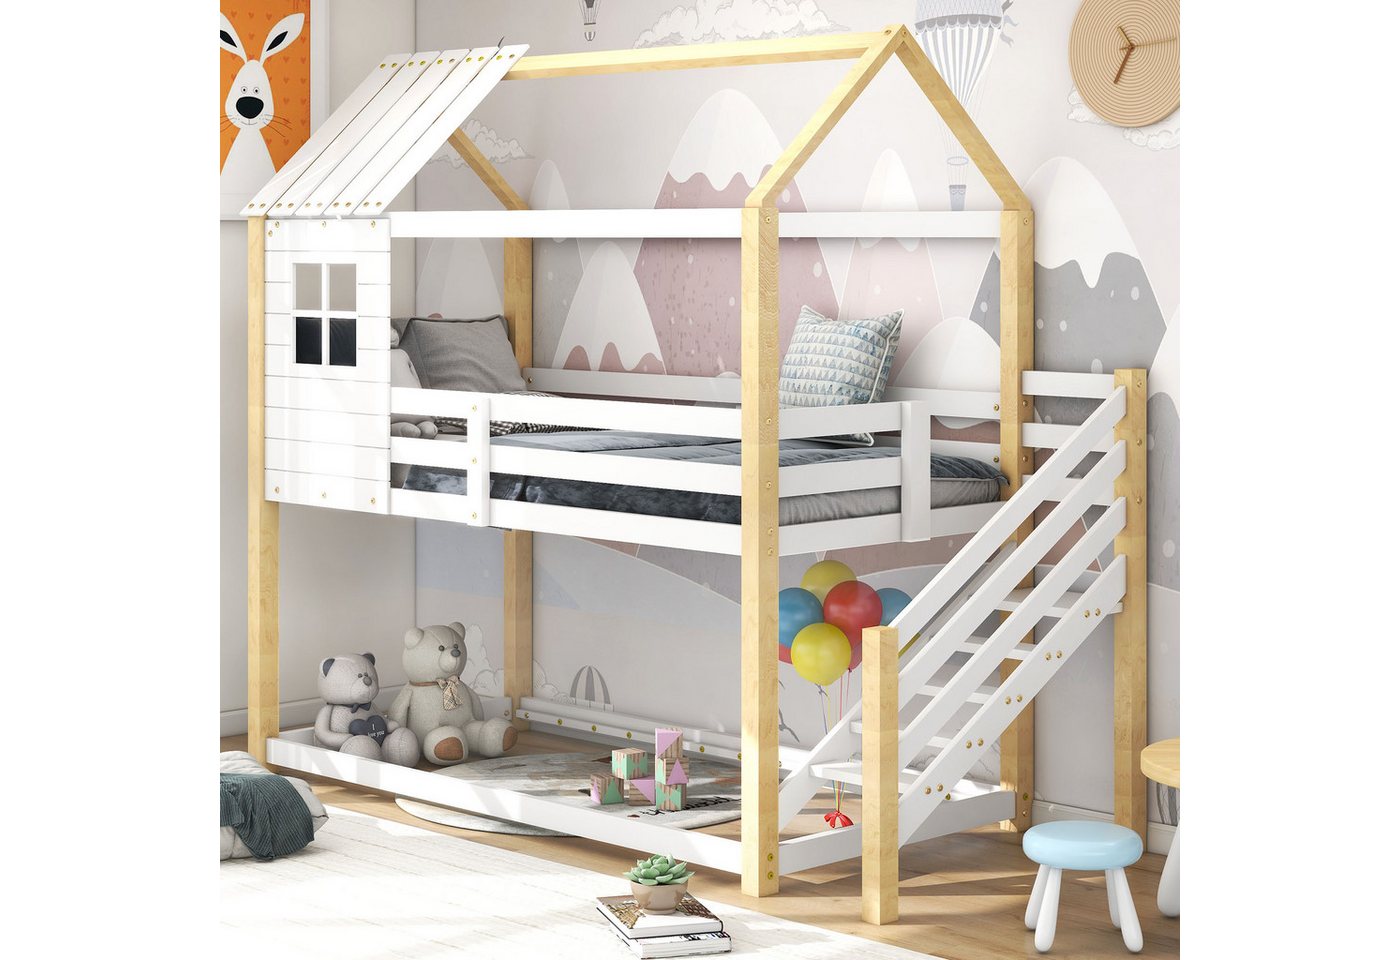 IDEASY Etagenbett Etagenbett aus Holz, eingebaute Leiter, Sicherheitsgeländ günstig online kaufen